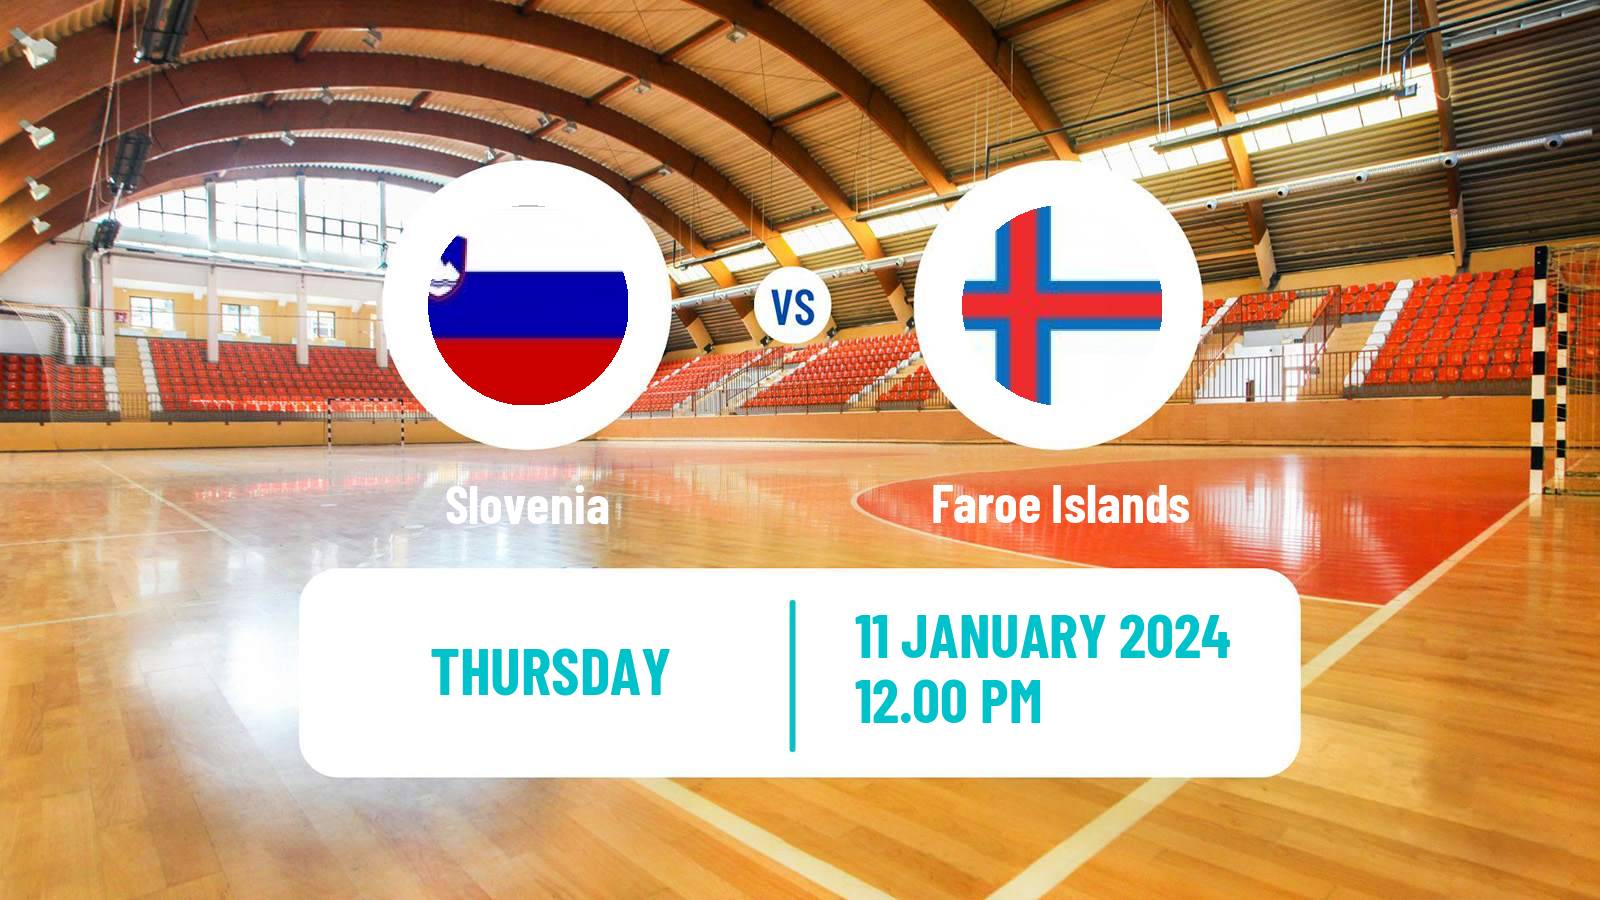 Handball Handball European Championship Slovenia - Faroe Islands